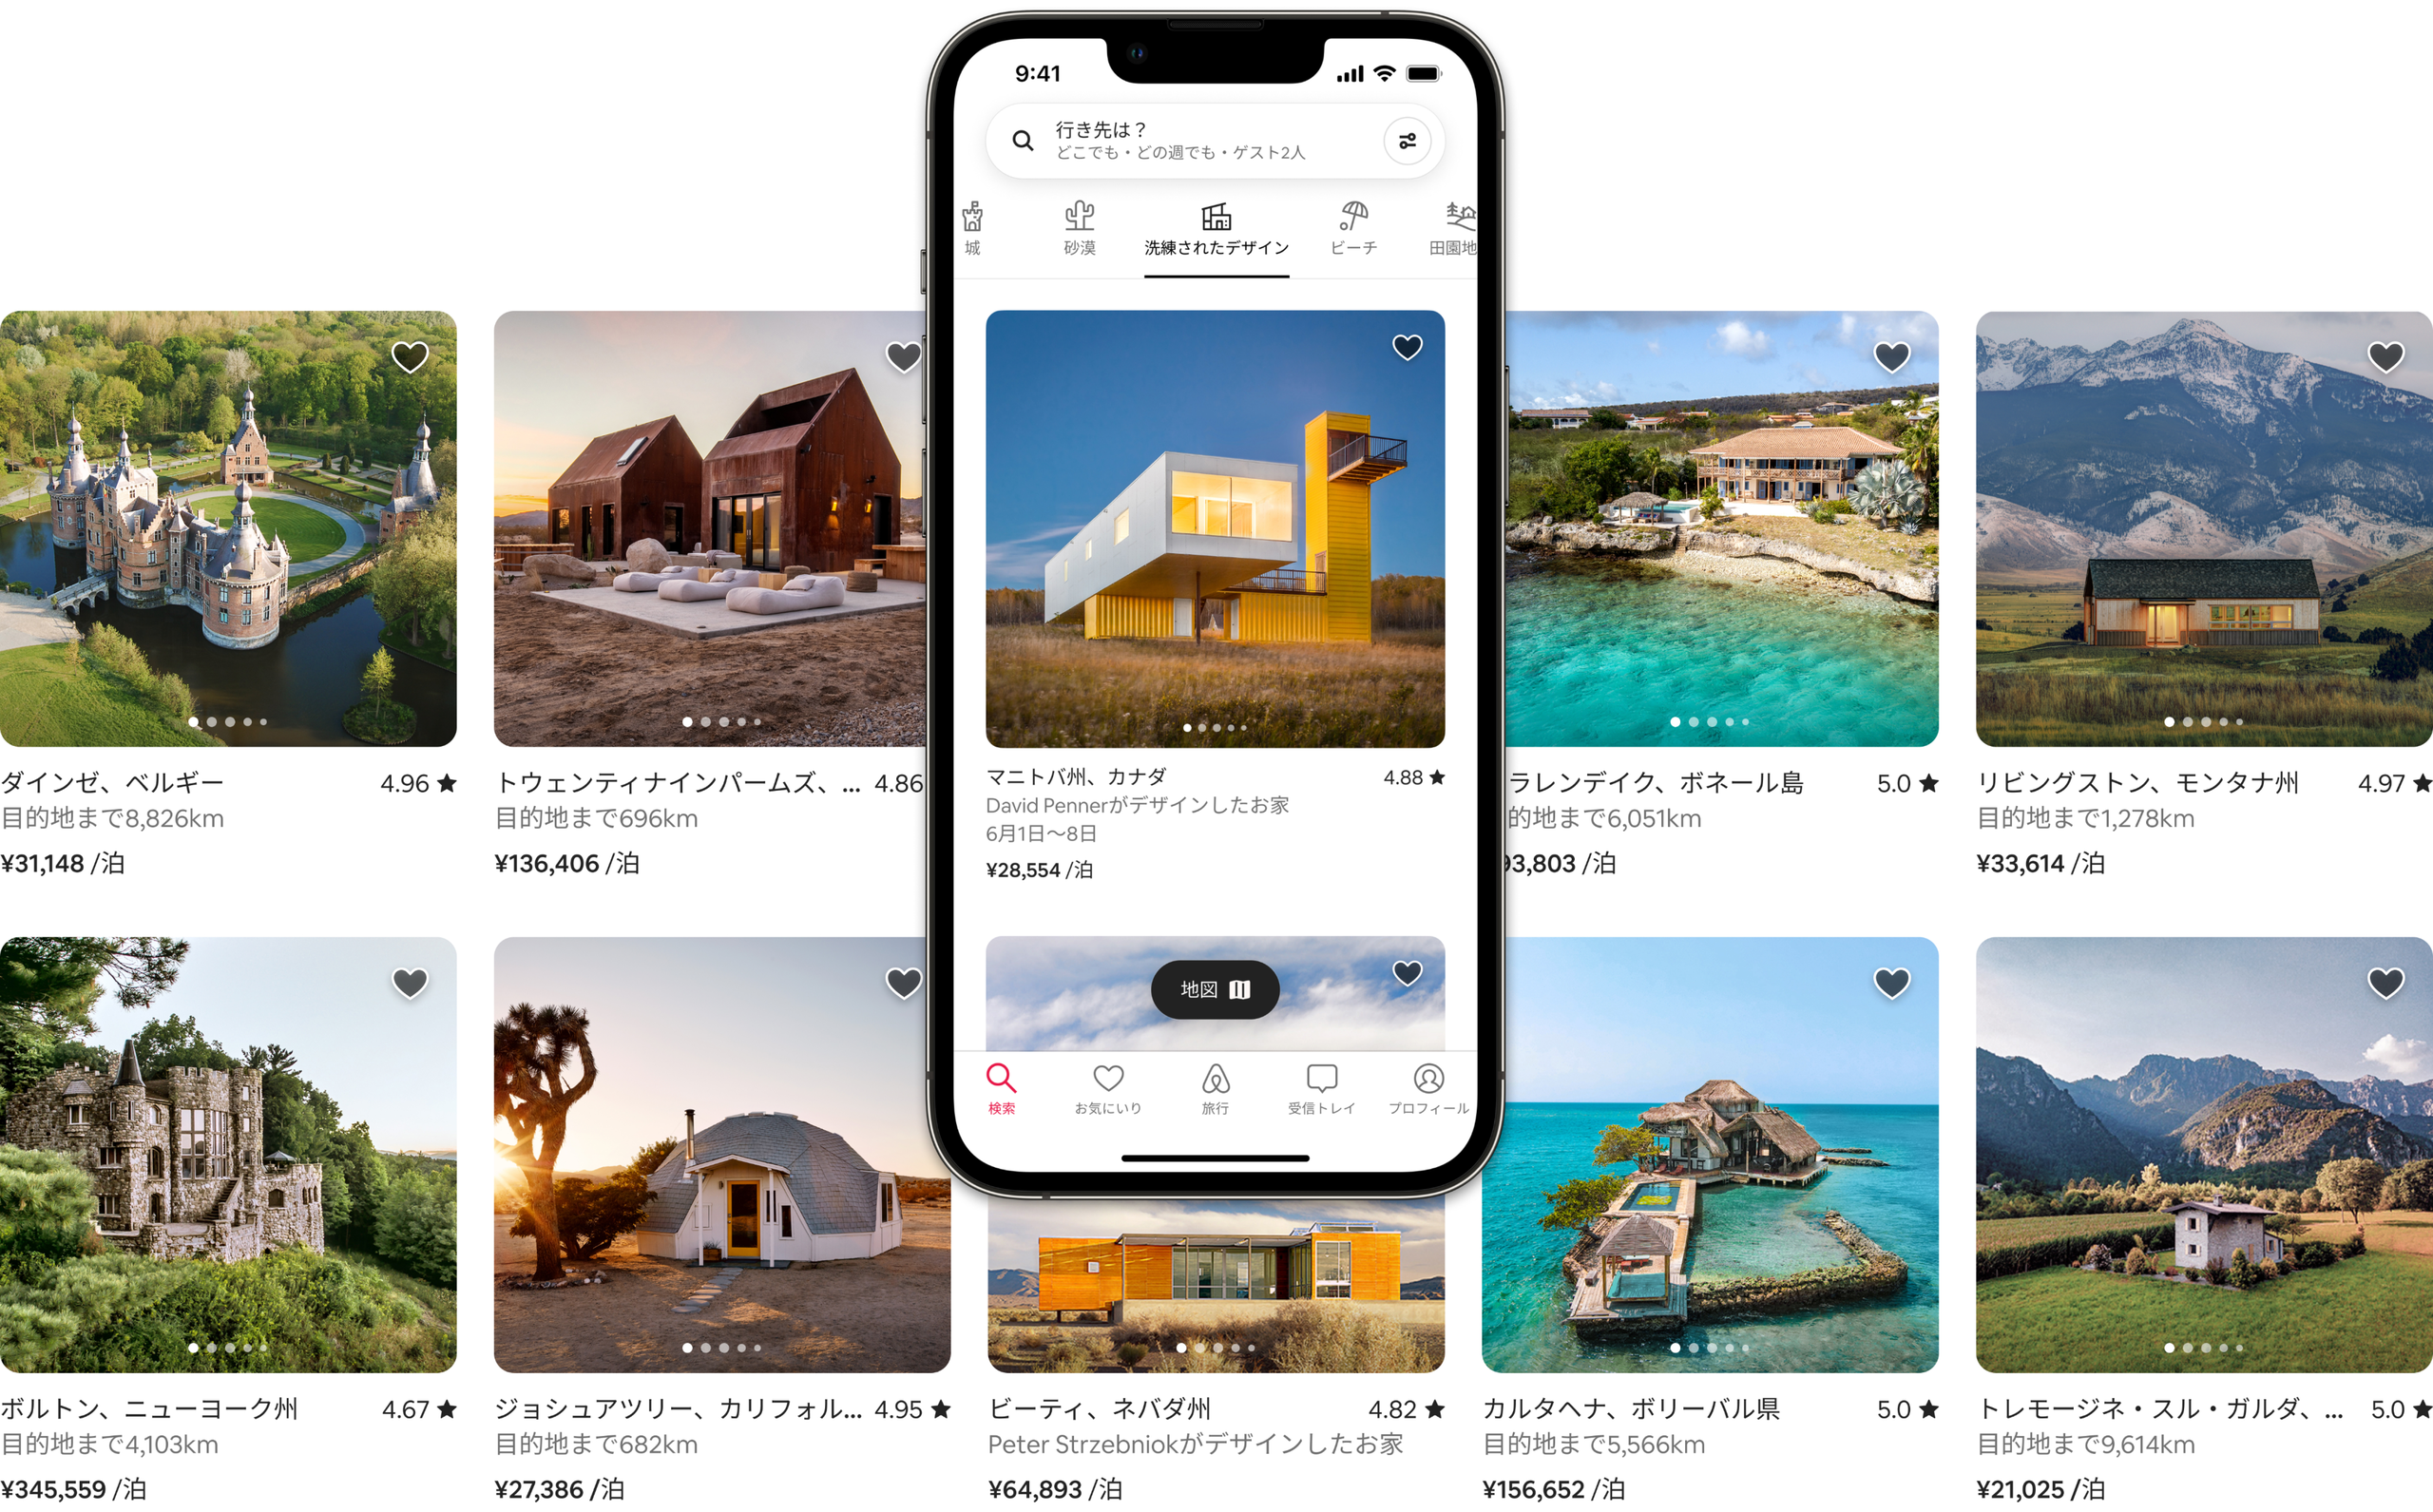 Airbnbの「城」「砂漠」「洗練されたデザイン」「ビーチ」「田園地帯」のカテゴリに属する宿泊先が、2列に並んだ美しいリスティング写真で紹介されています。リスティングの1つを携帯電話の画面に表示し、Airbnbアプリでリスティングがどのように表示されるかを実演しています。